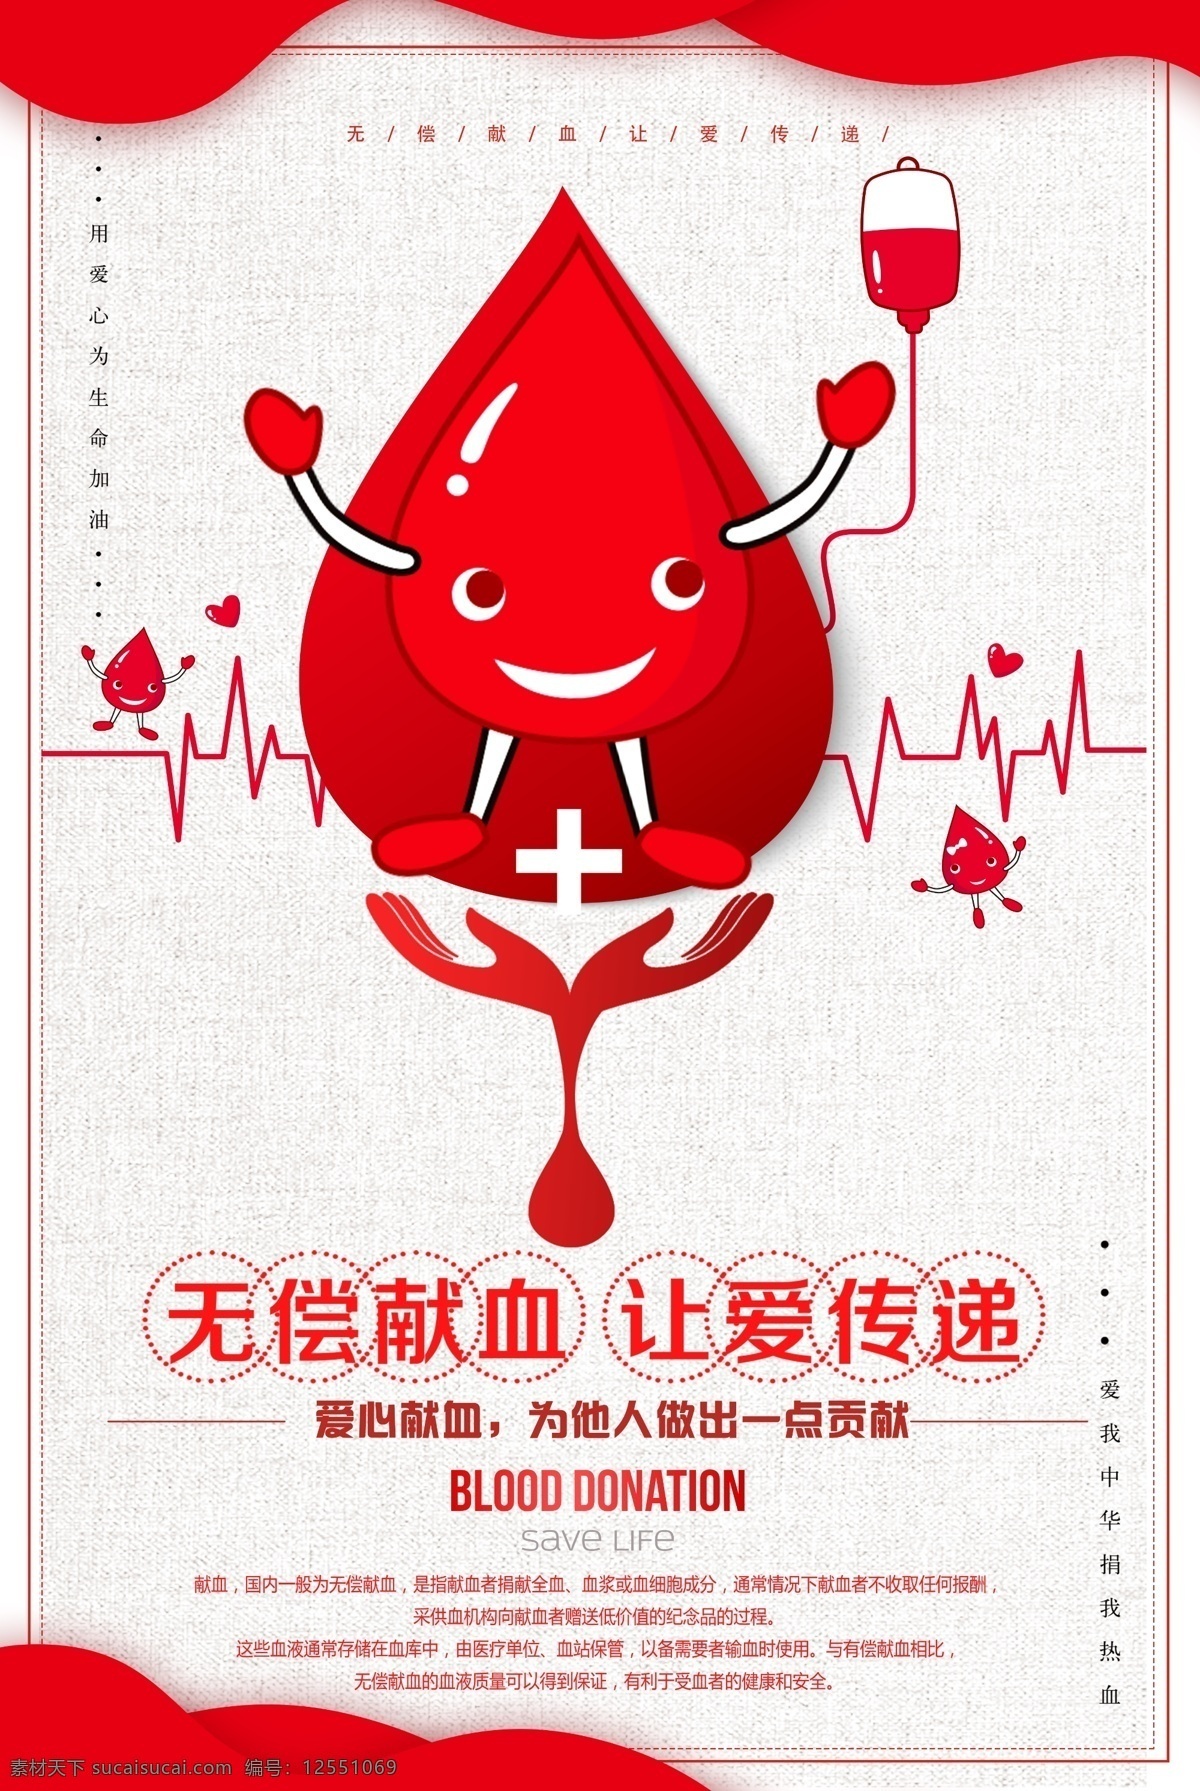 无偿献血 爱 传递 海报 公益海报 献血 公益事业 爱心公益 献血光荣 让爱传递 分层